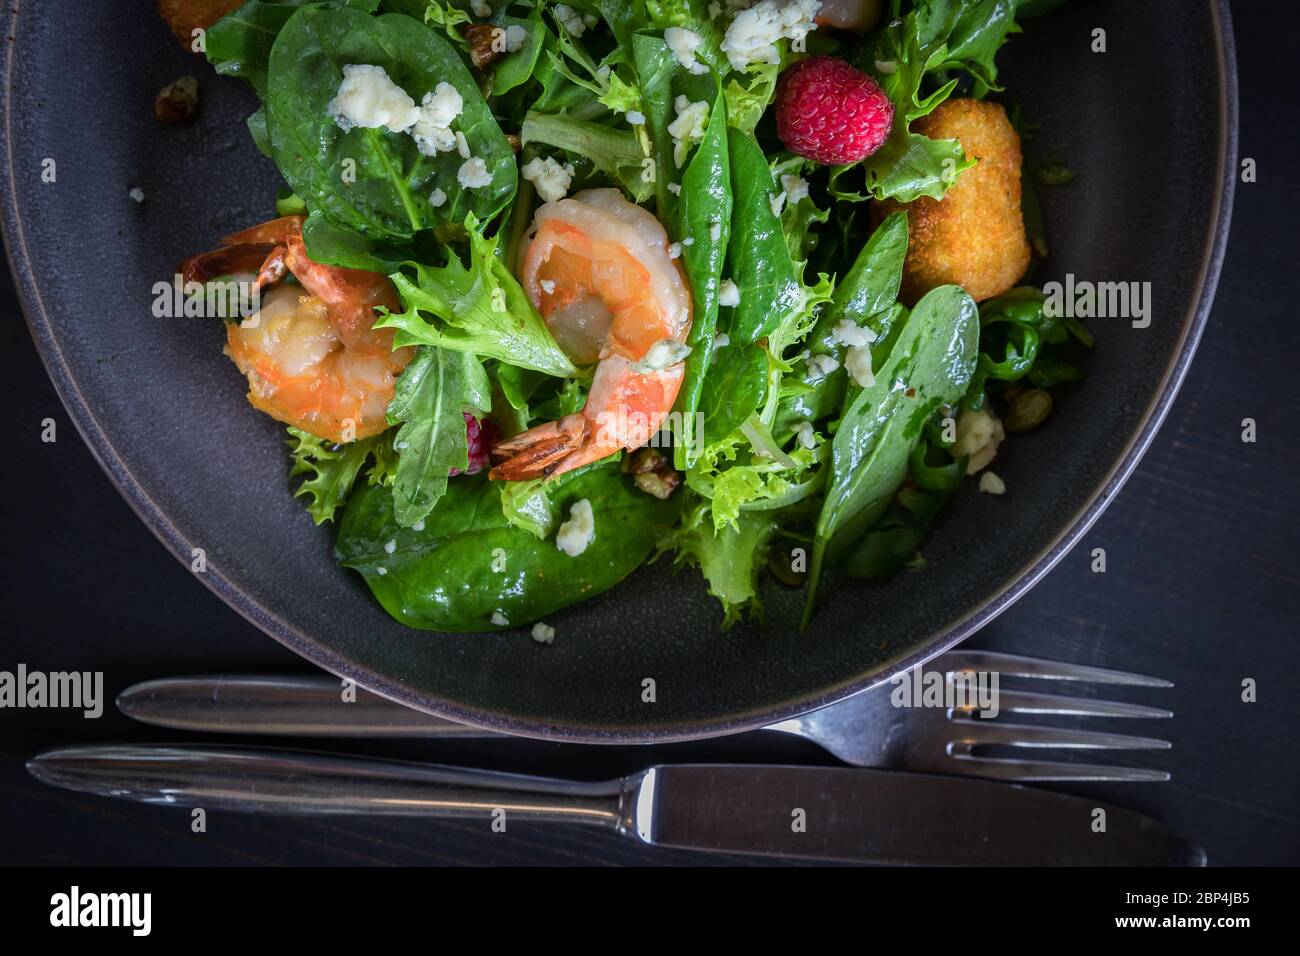 Vue rapprochée sur la salade de crevettes tigrées avec fromage de brie, framboises, noix. Panneau en bois sur fond gris Banque D'Images